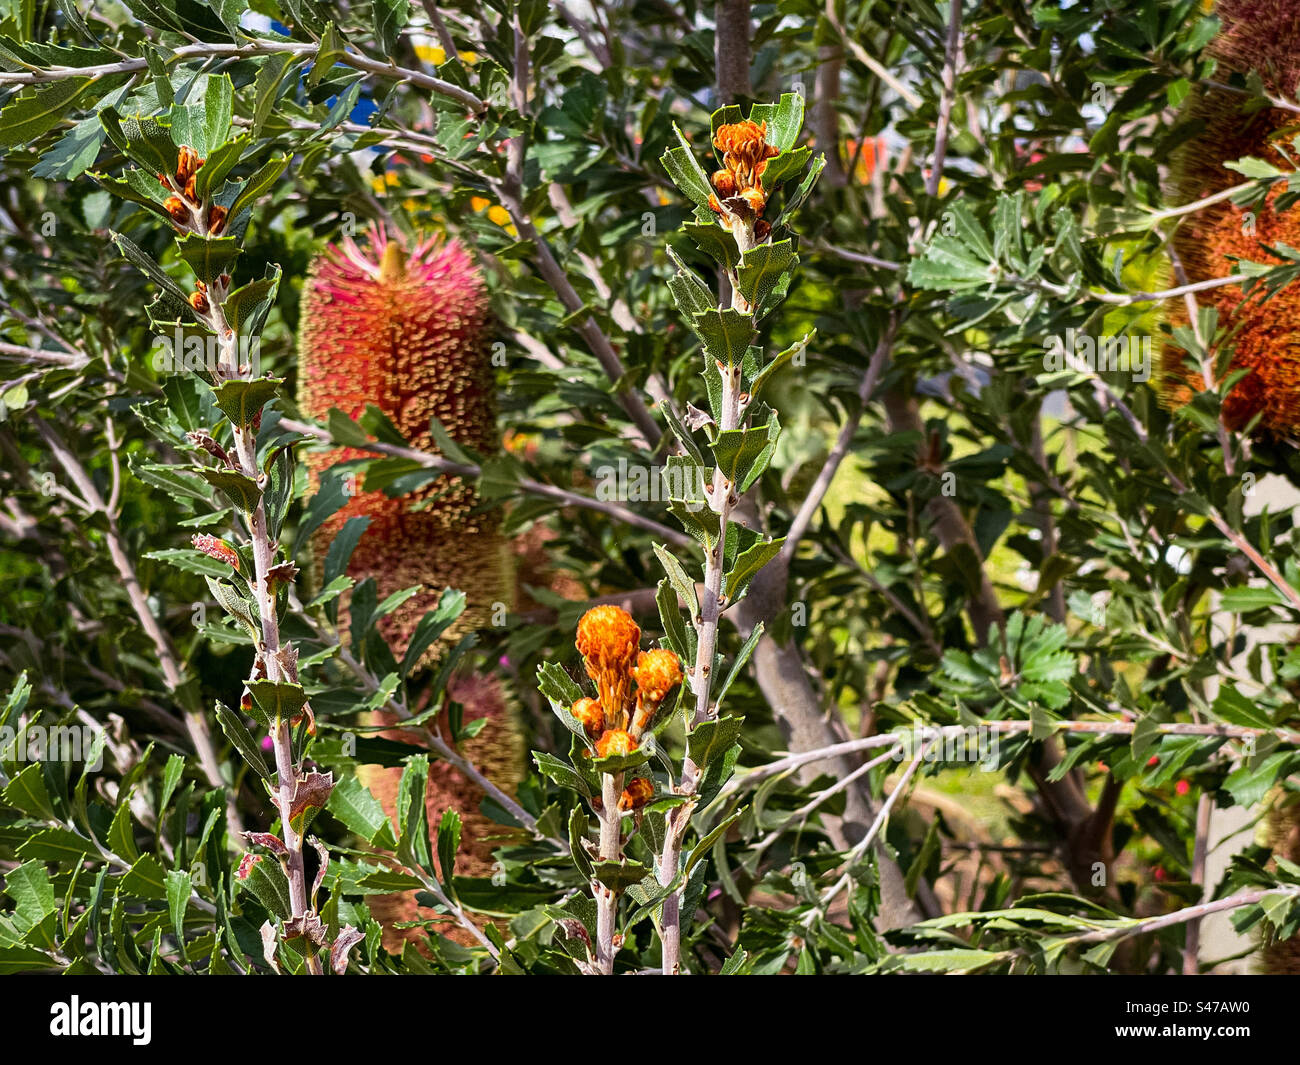 Primo piano di arbusto di Banksia praemorsa con boccioli di fiori e coni di fiori verticali. Comunemente conosciuta come banksia a foglia tagliata, è una pianta nativa australiana. Foto Stock